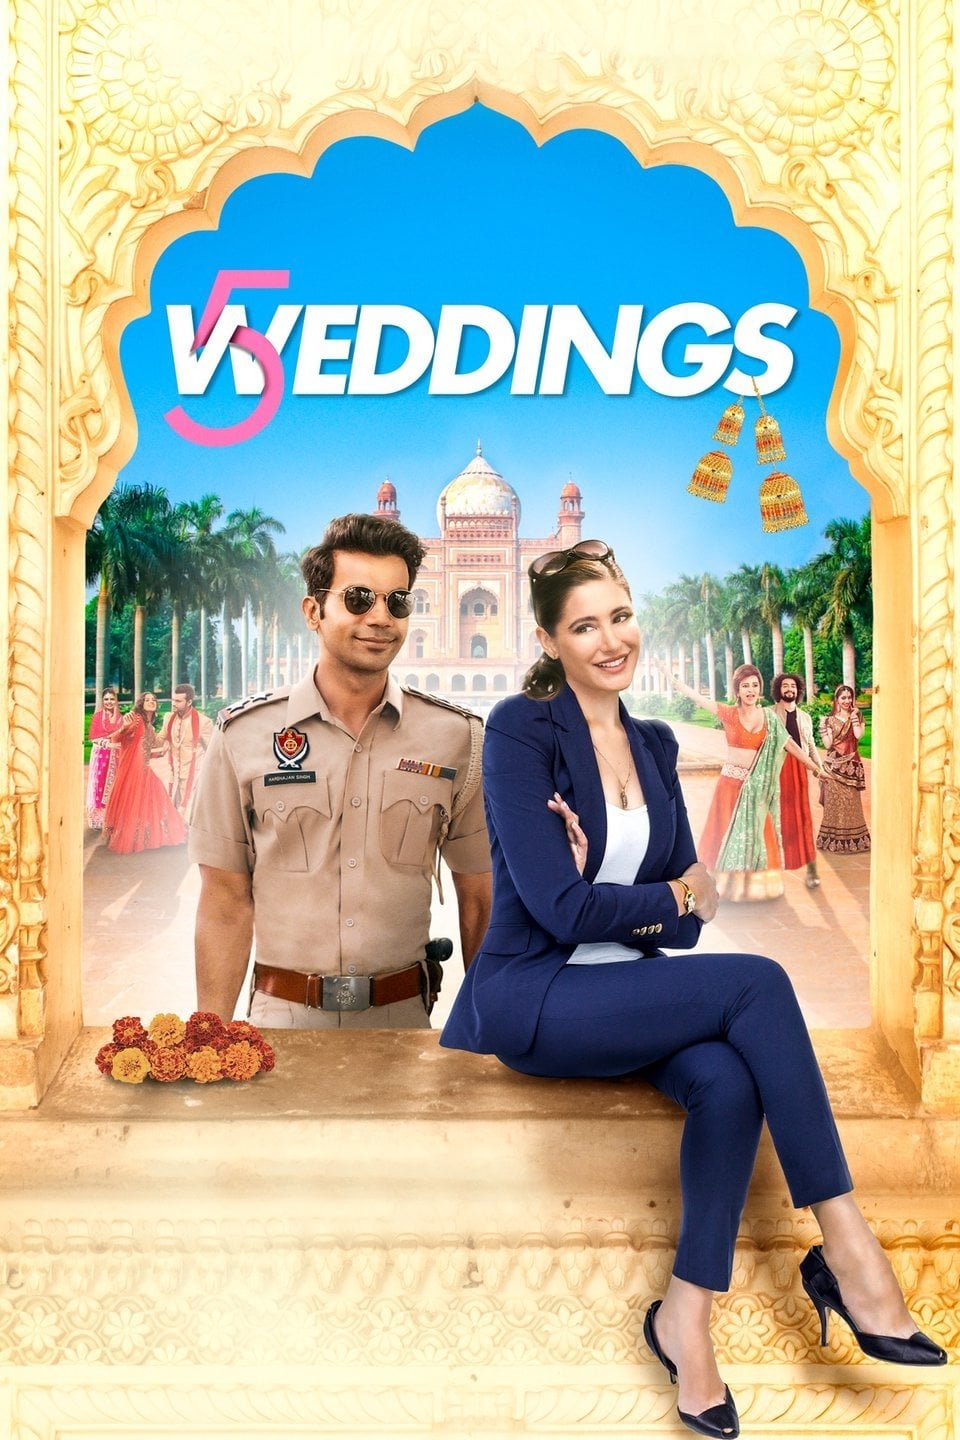 5 Weddings film